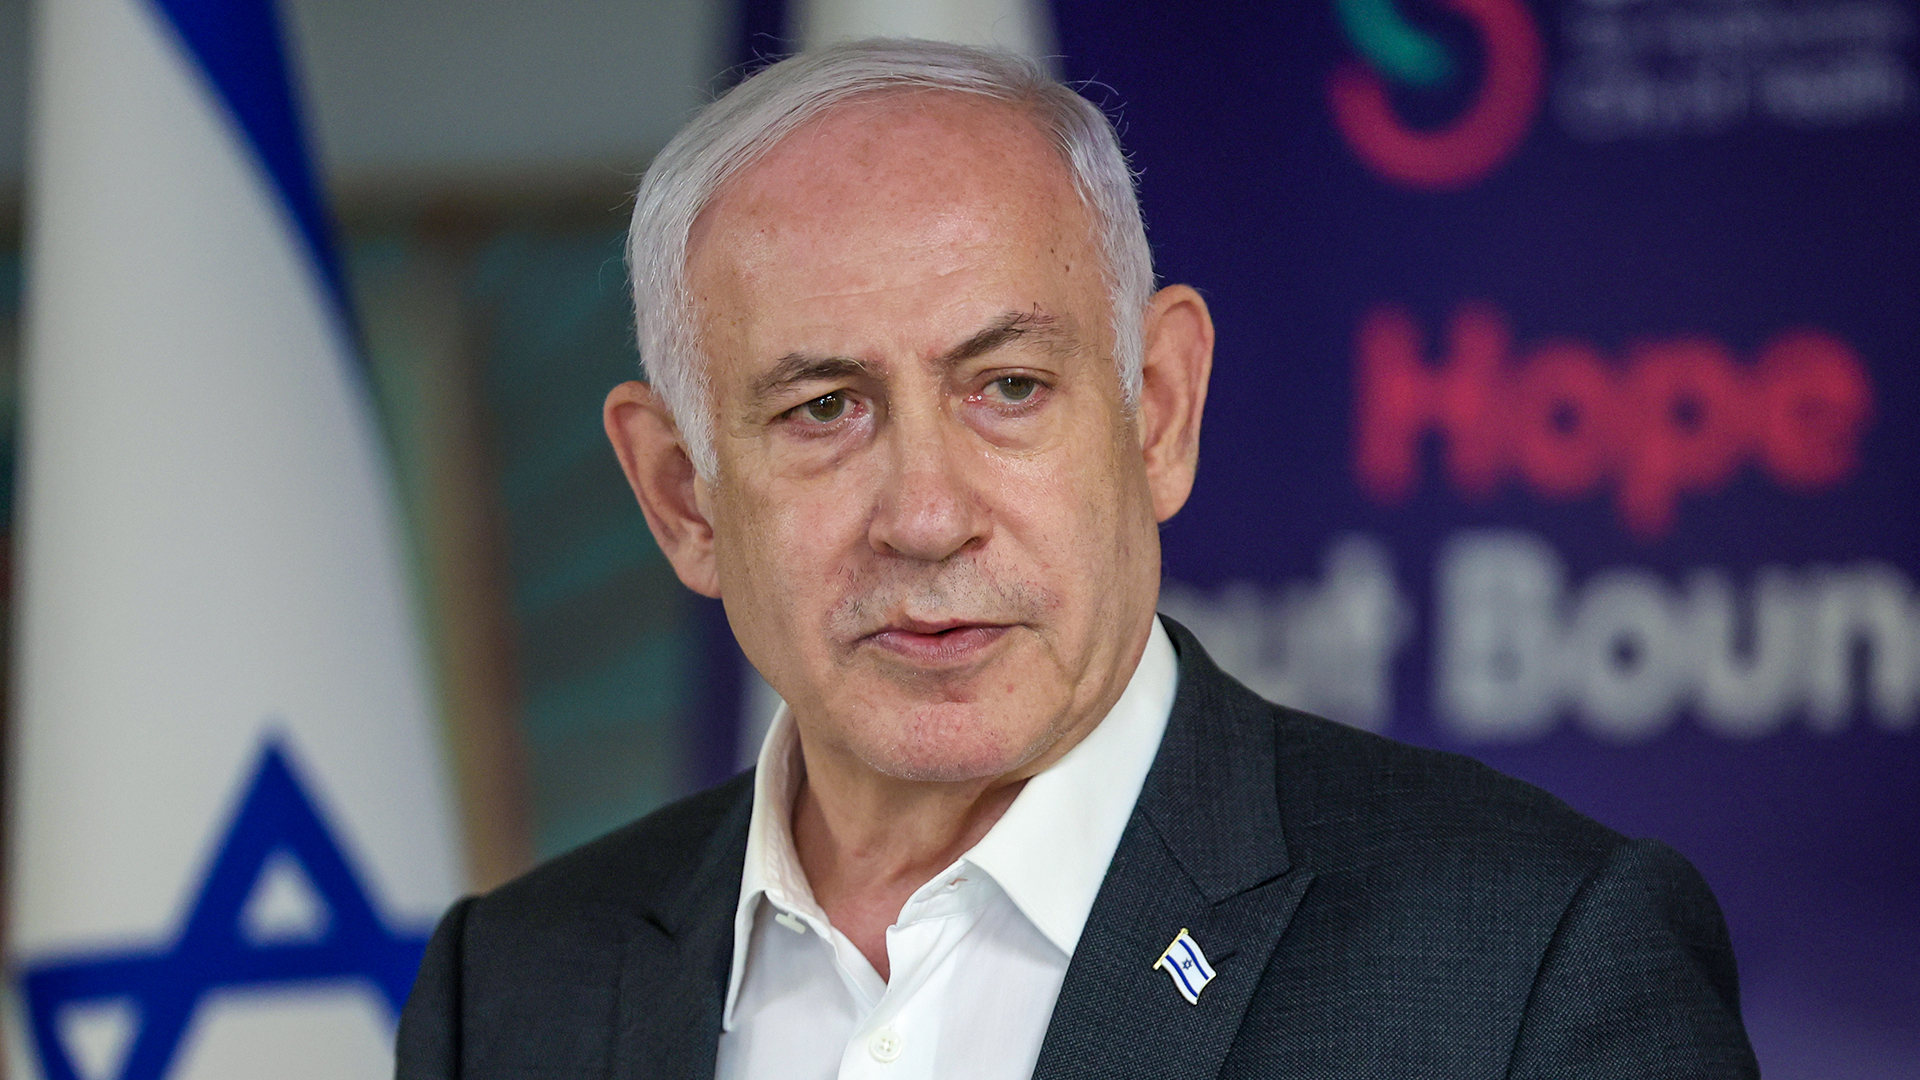 "Eles sofrem, mas não morrem": Netanyahu causa indignação com comentários sobre reféns